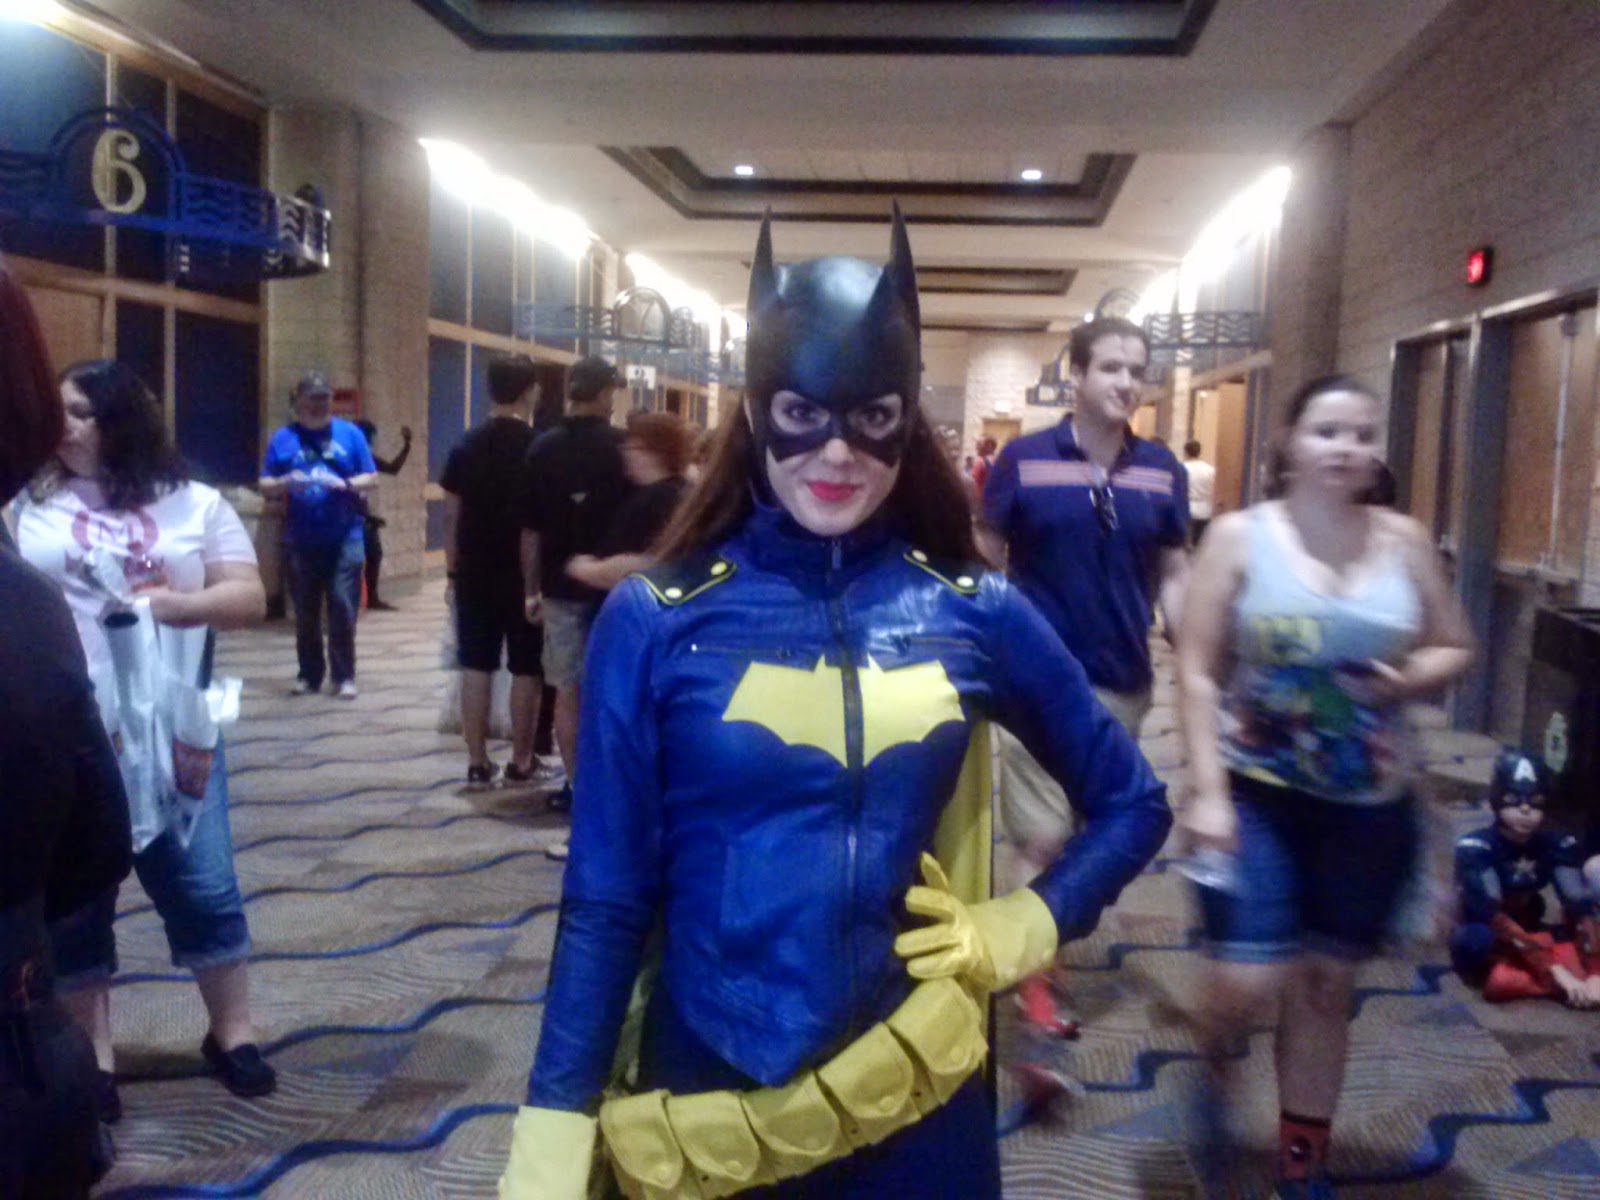 Alyson Larkin as Batgirl